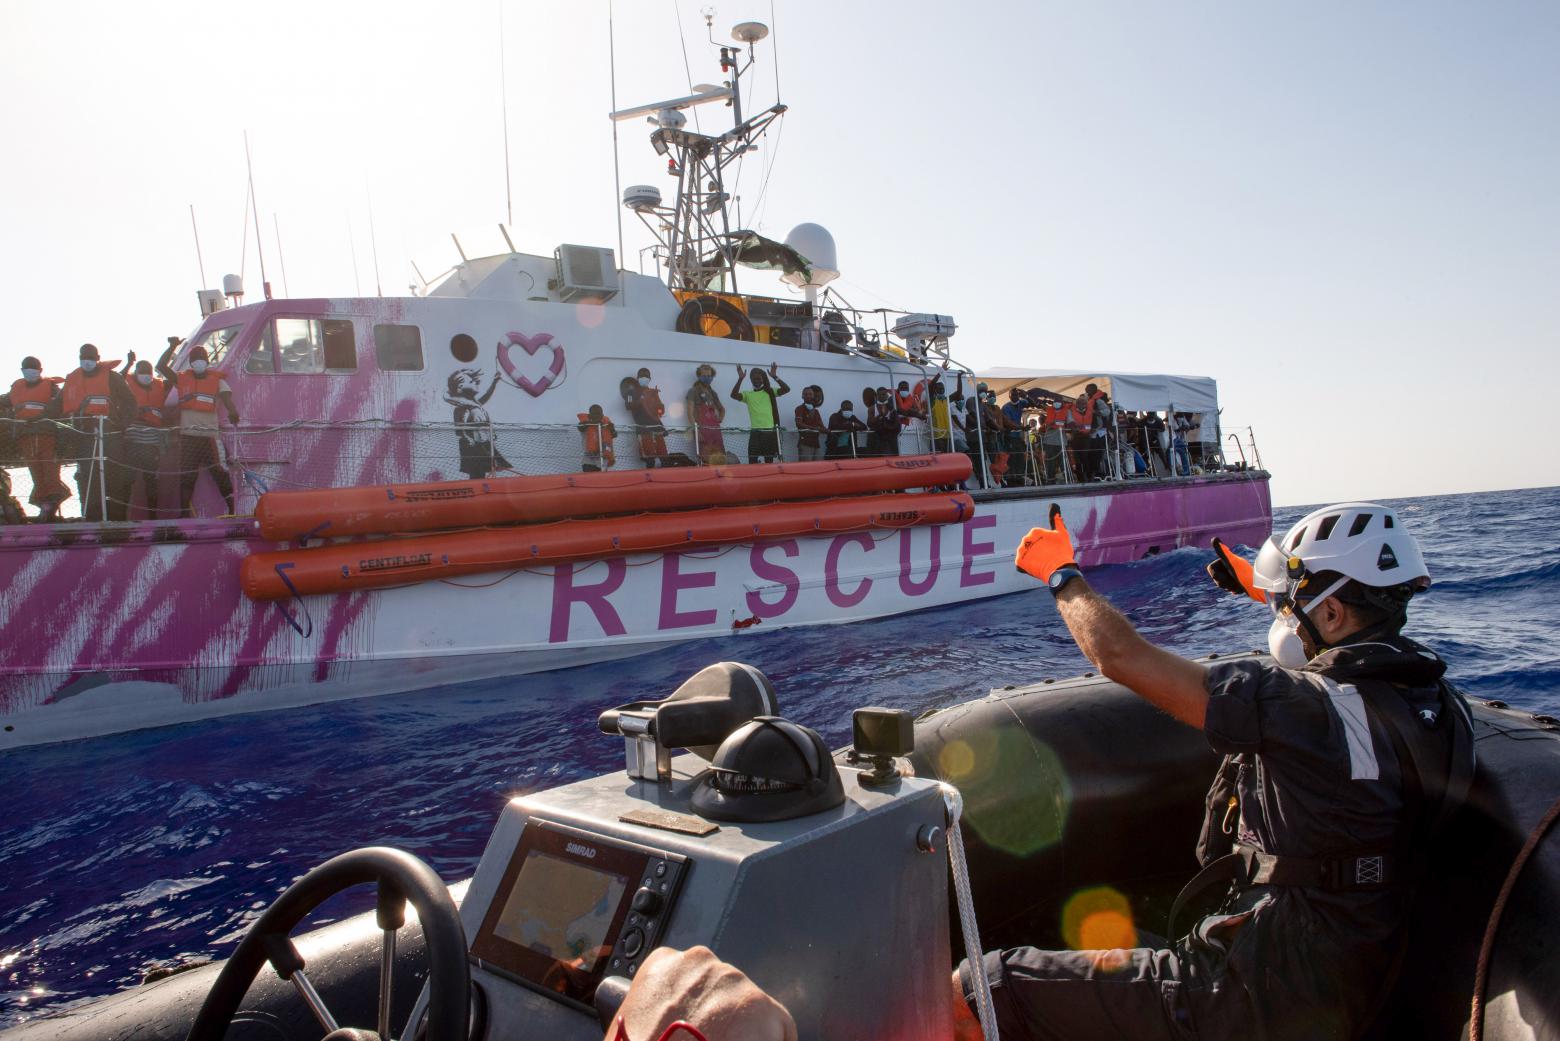 Das vom Street Art Künstler Banksy bemalte Rettungssschiff "Louise Michel" transferiert am 29. August im Mittelmeer mehr als 150 gerettete Menschen zum Rettungsschiff Sea Watch 4